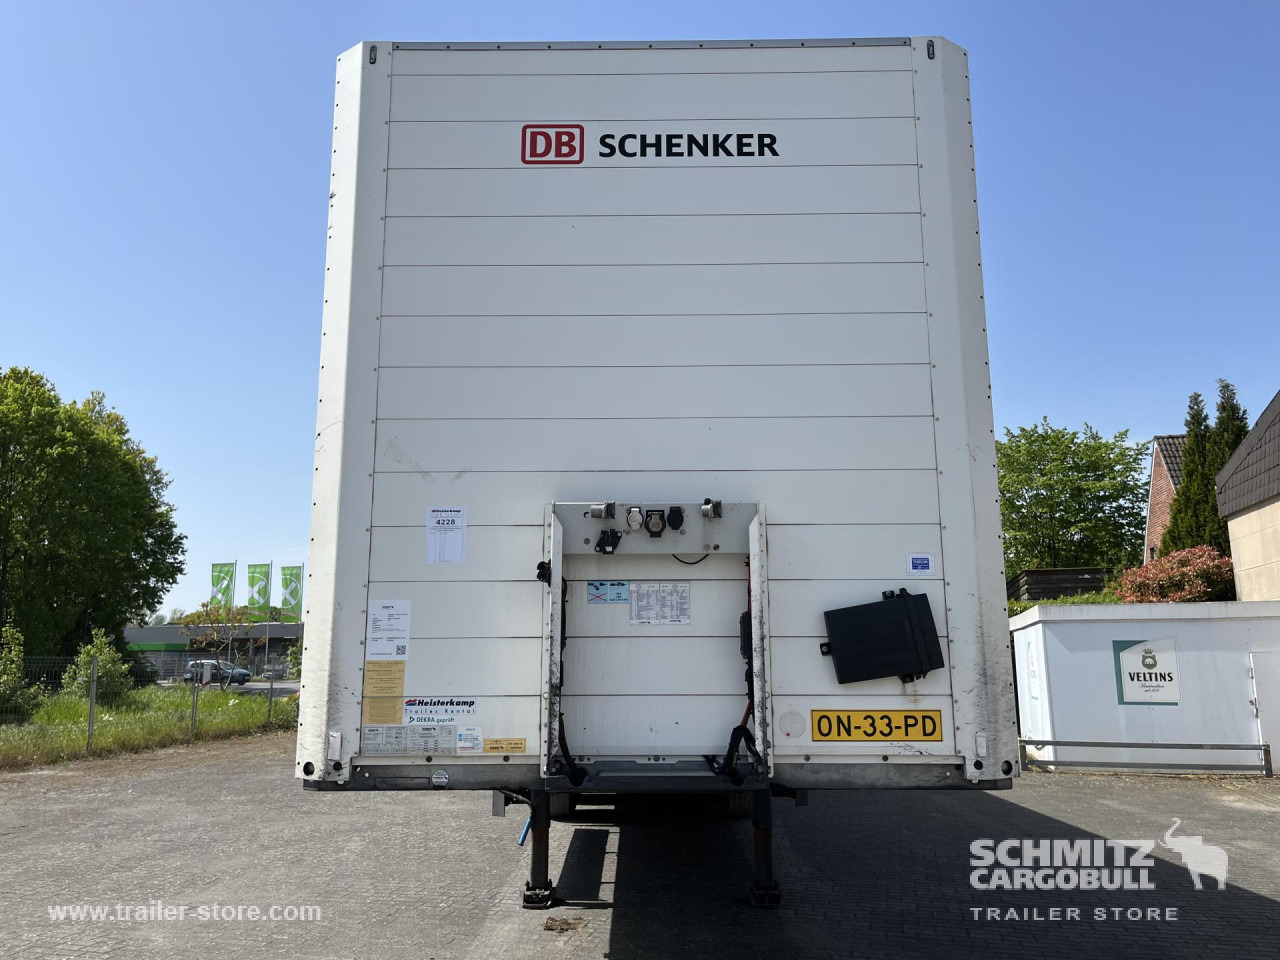 封闭厢式半拖车 SCHMITZ Auflieger Trockenfrachtkoffer Standard Taillift：图13